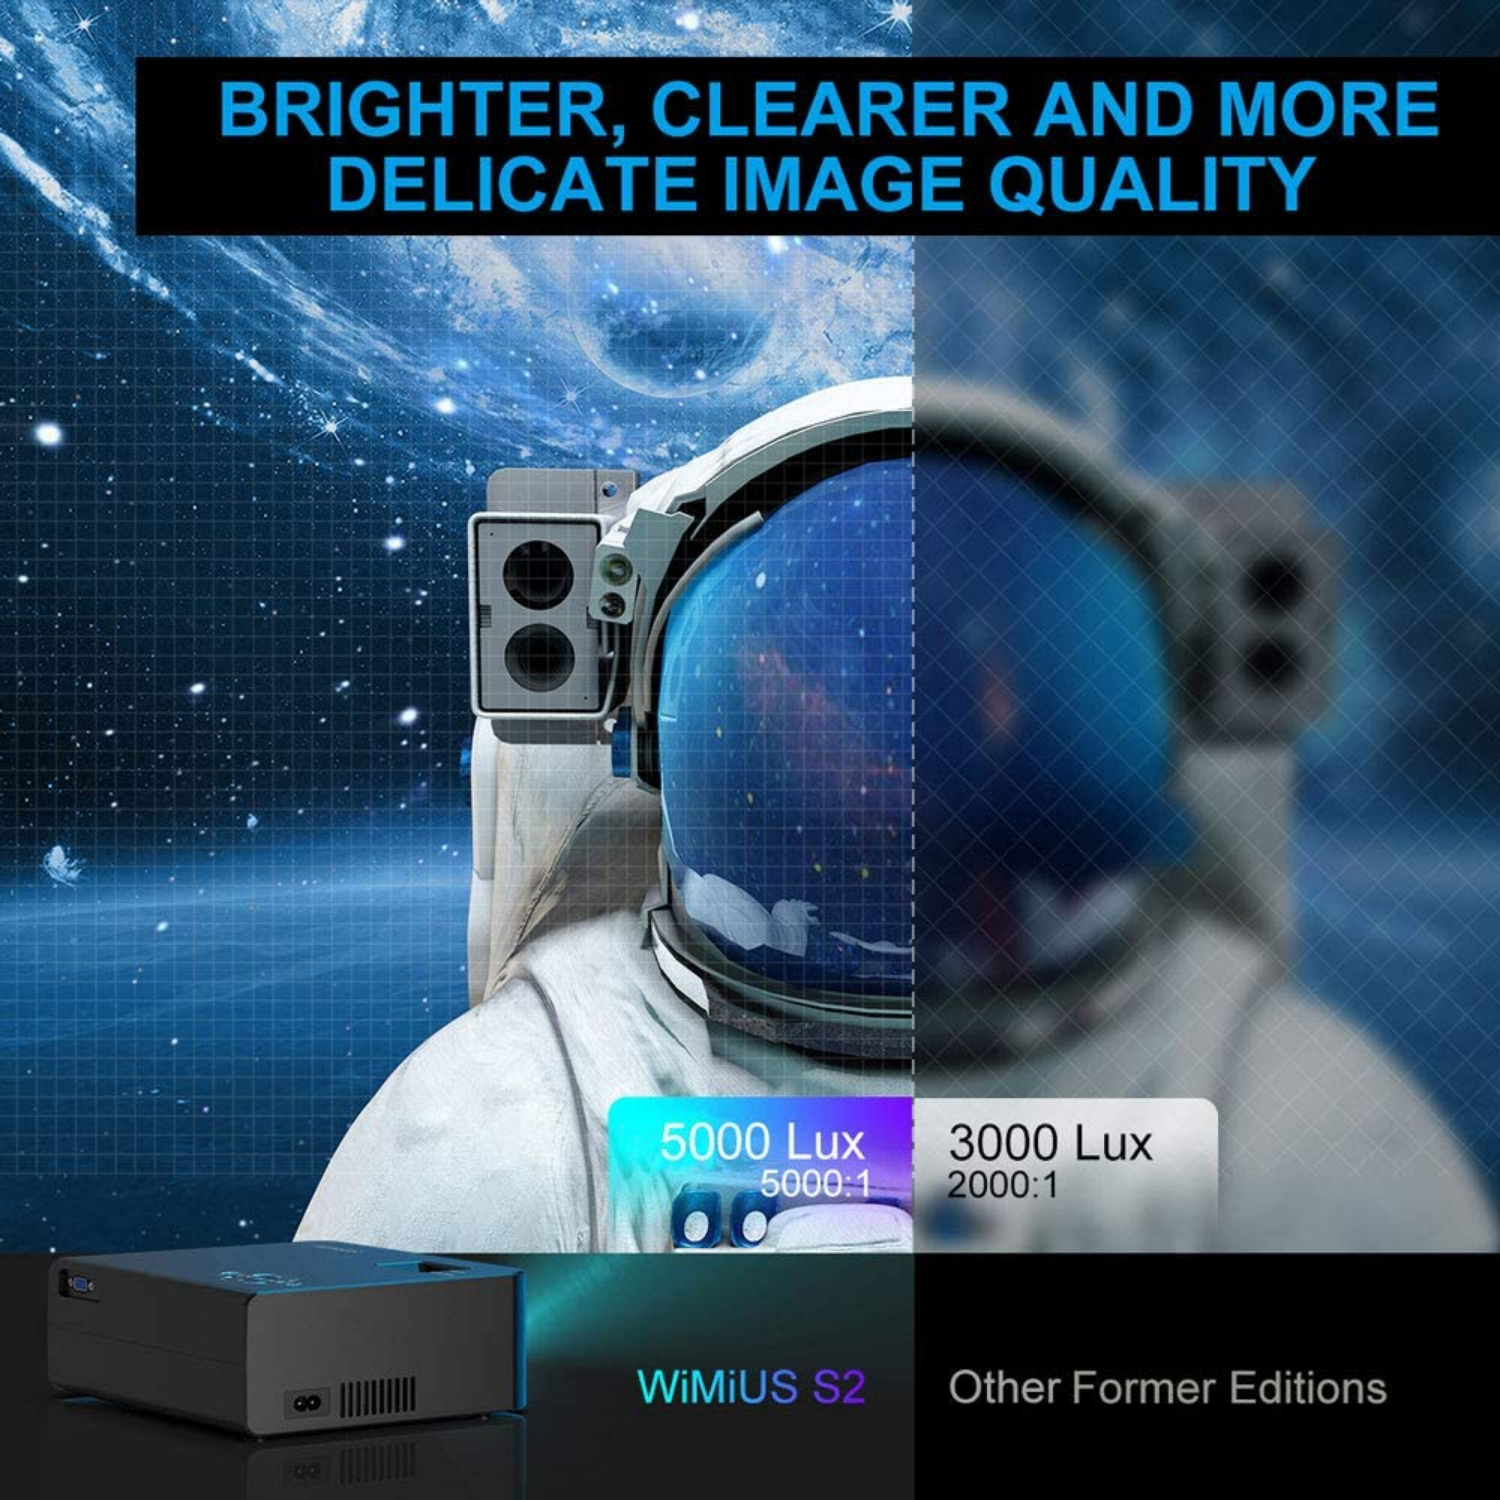 Mini proyector portatil LED WIMIUS 3000 Lúmenes - Buena calidad / precio